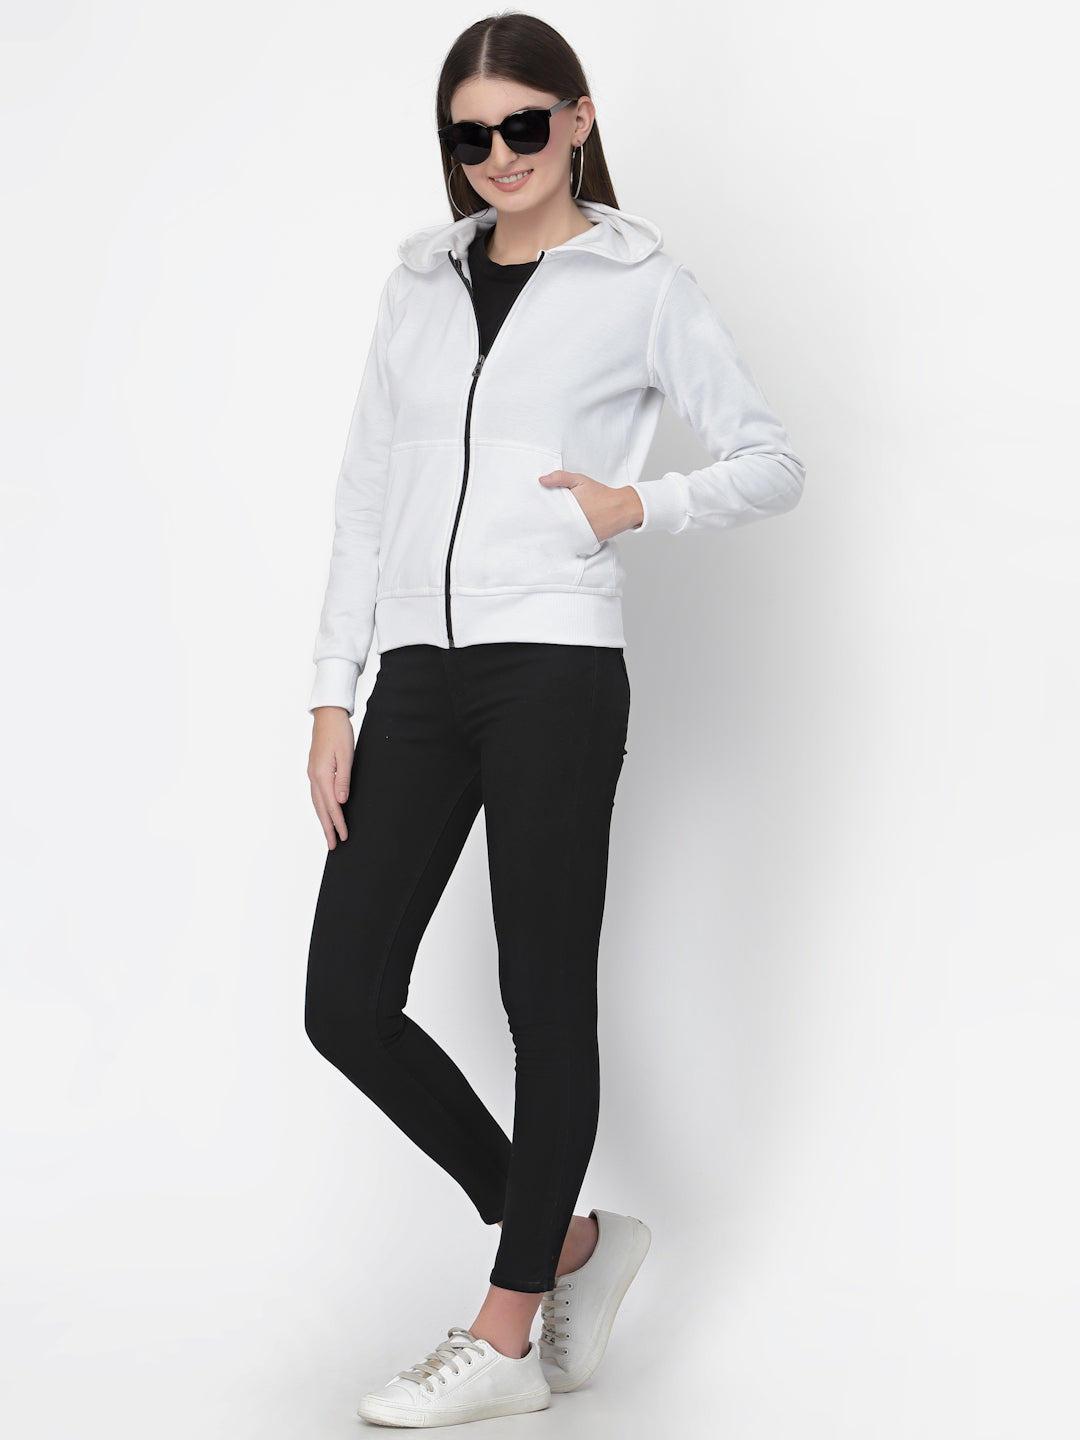 UZARUS Women's Cotton Fleece Premium Sweatshirt Hoodie